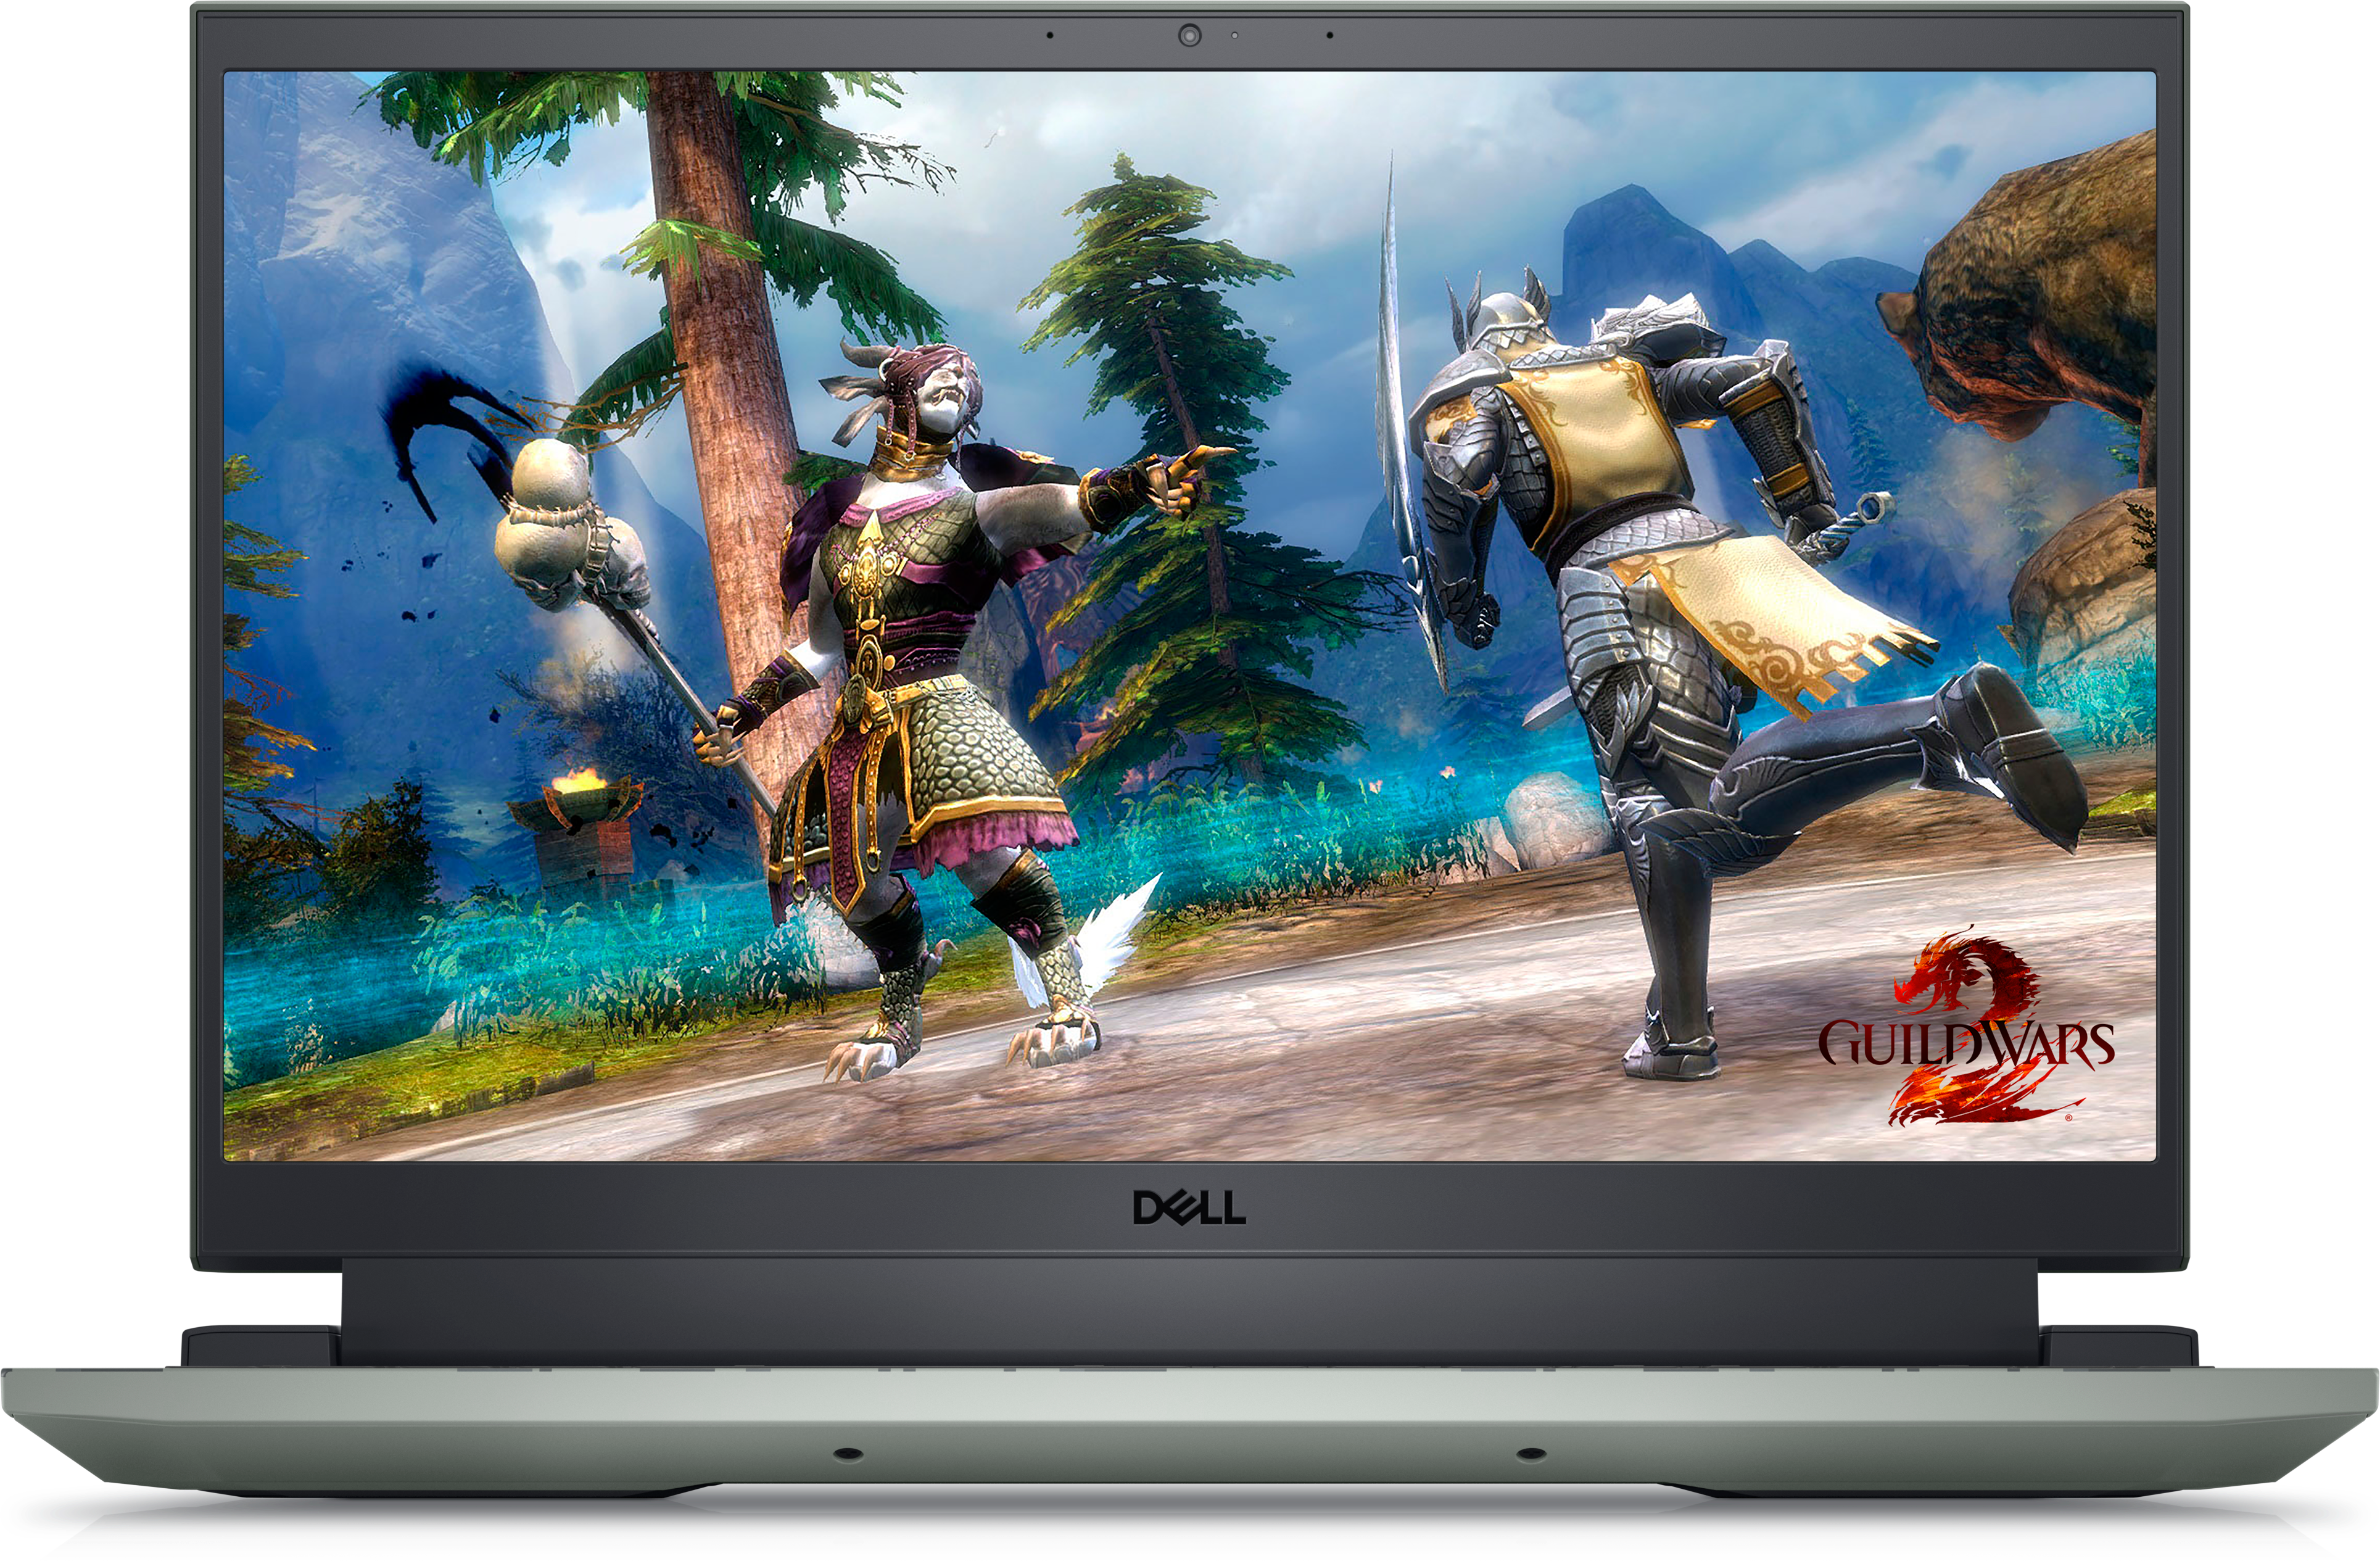 ゲーミングPC 2015 Newest Model Dell XPS 13 Ultrabook Computer